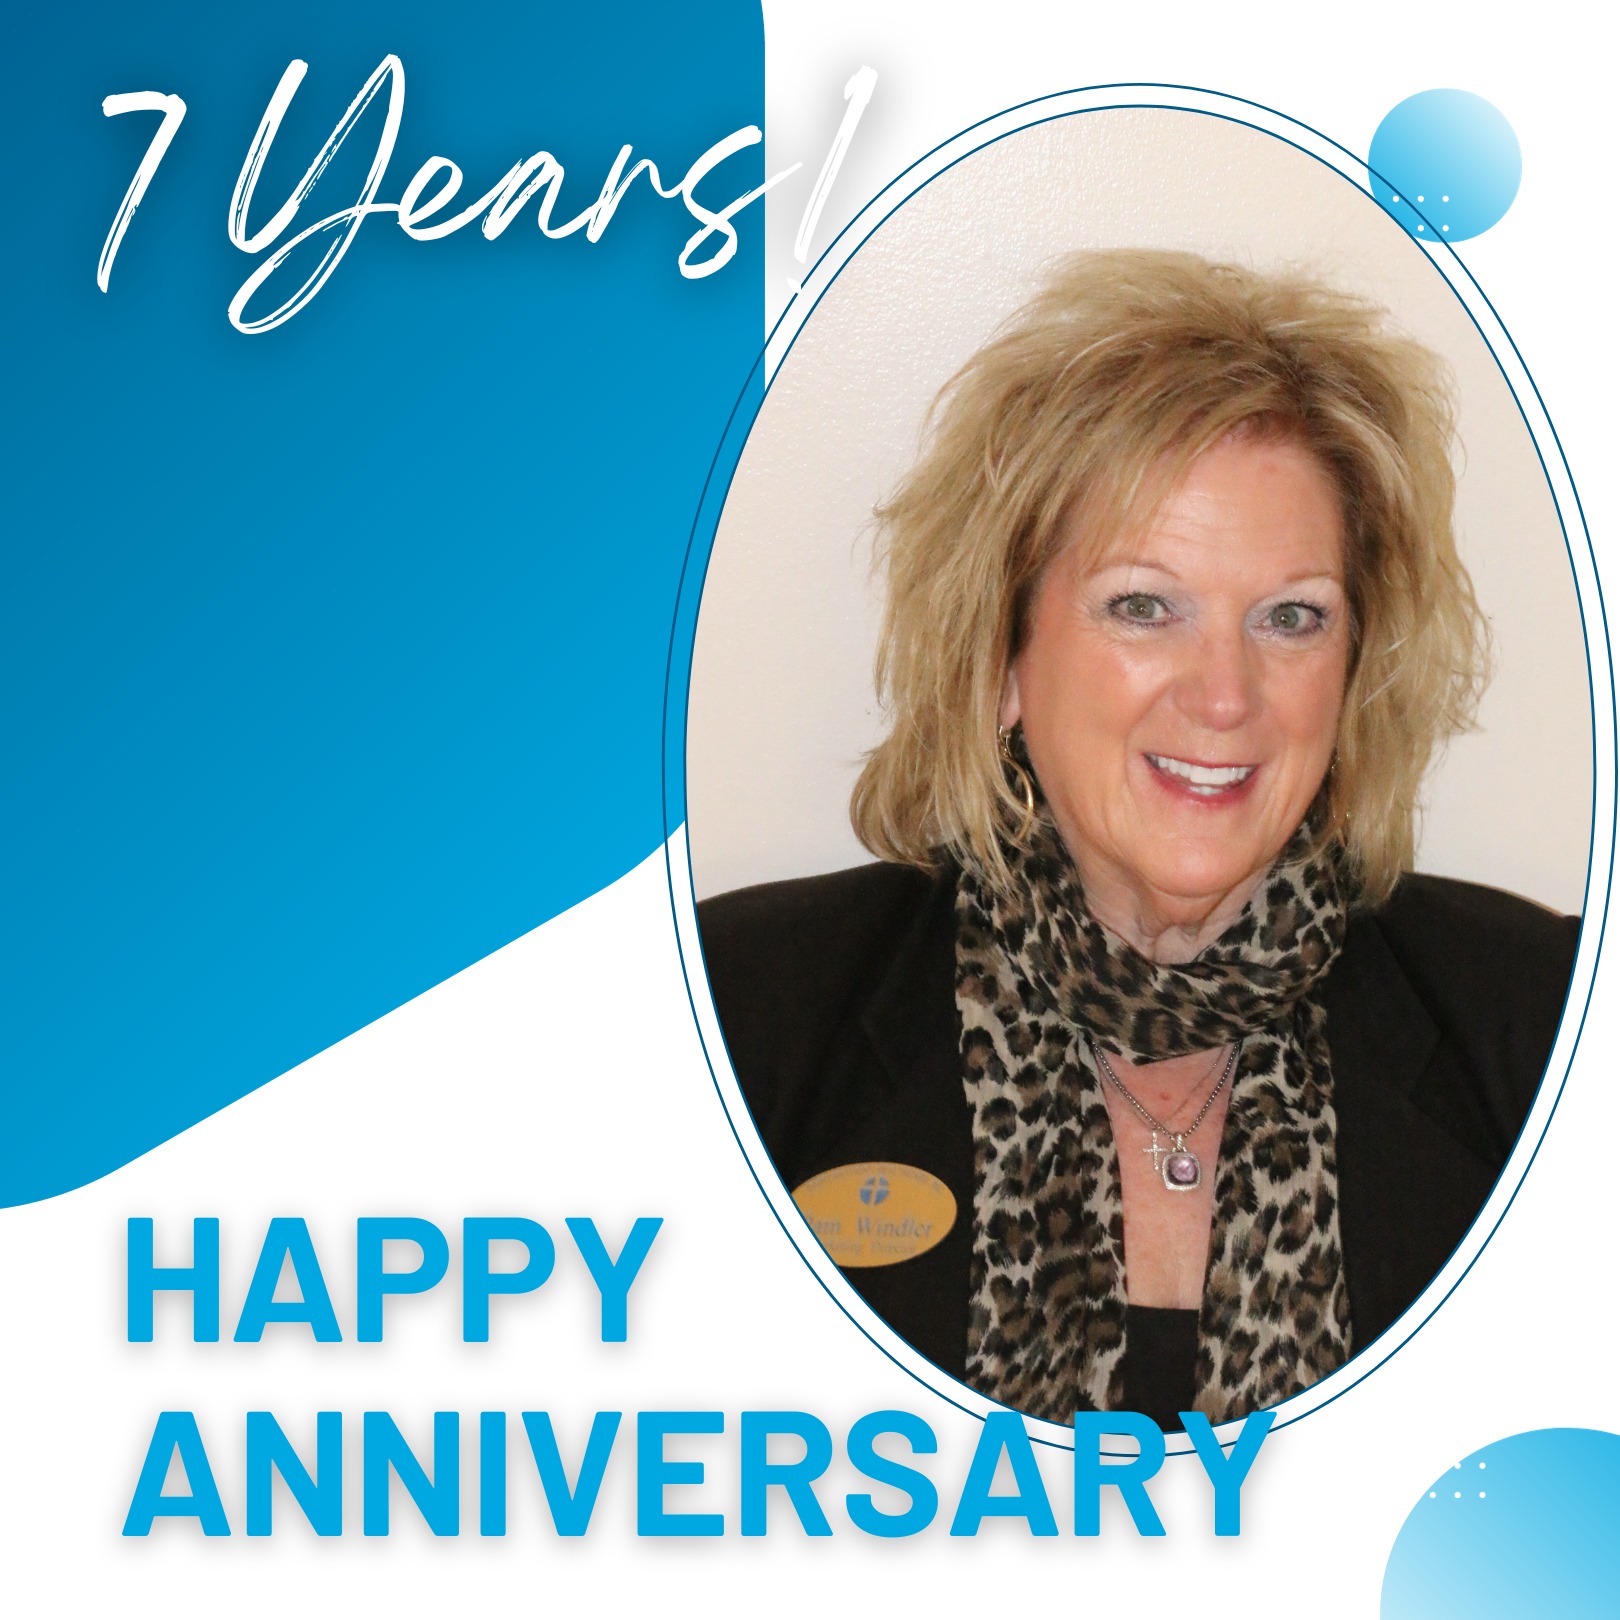 7 Years! Happy Anniversary Pam Windler!